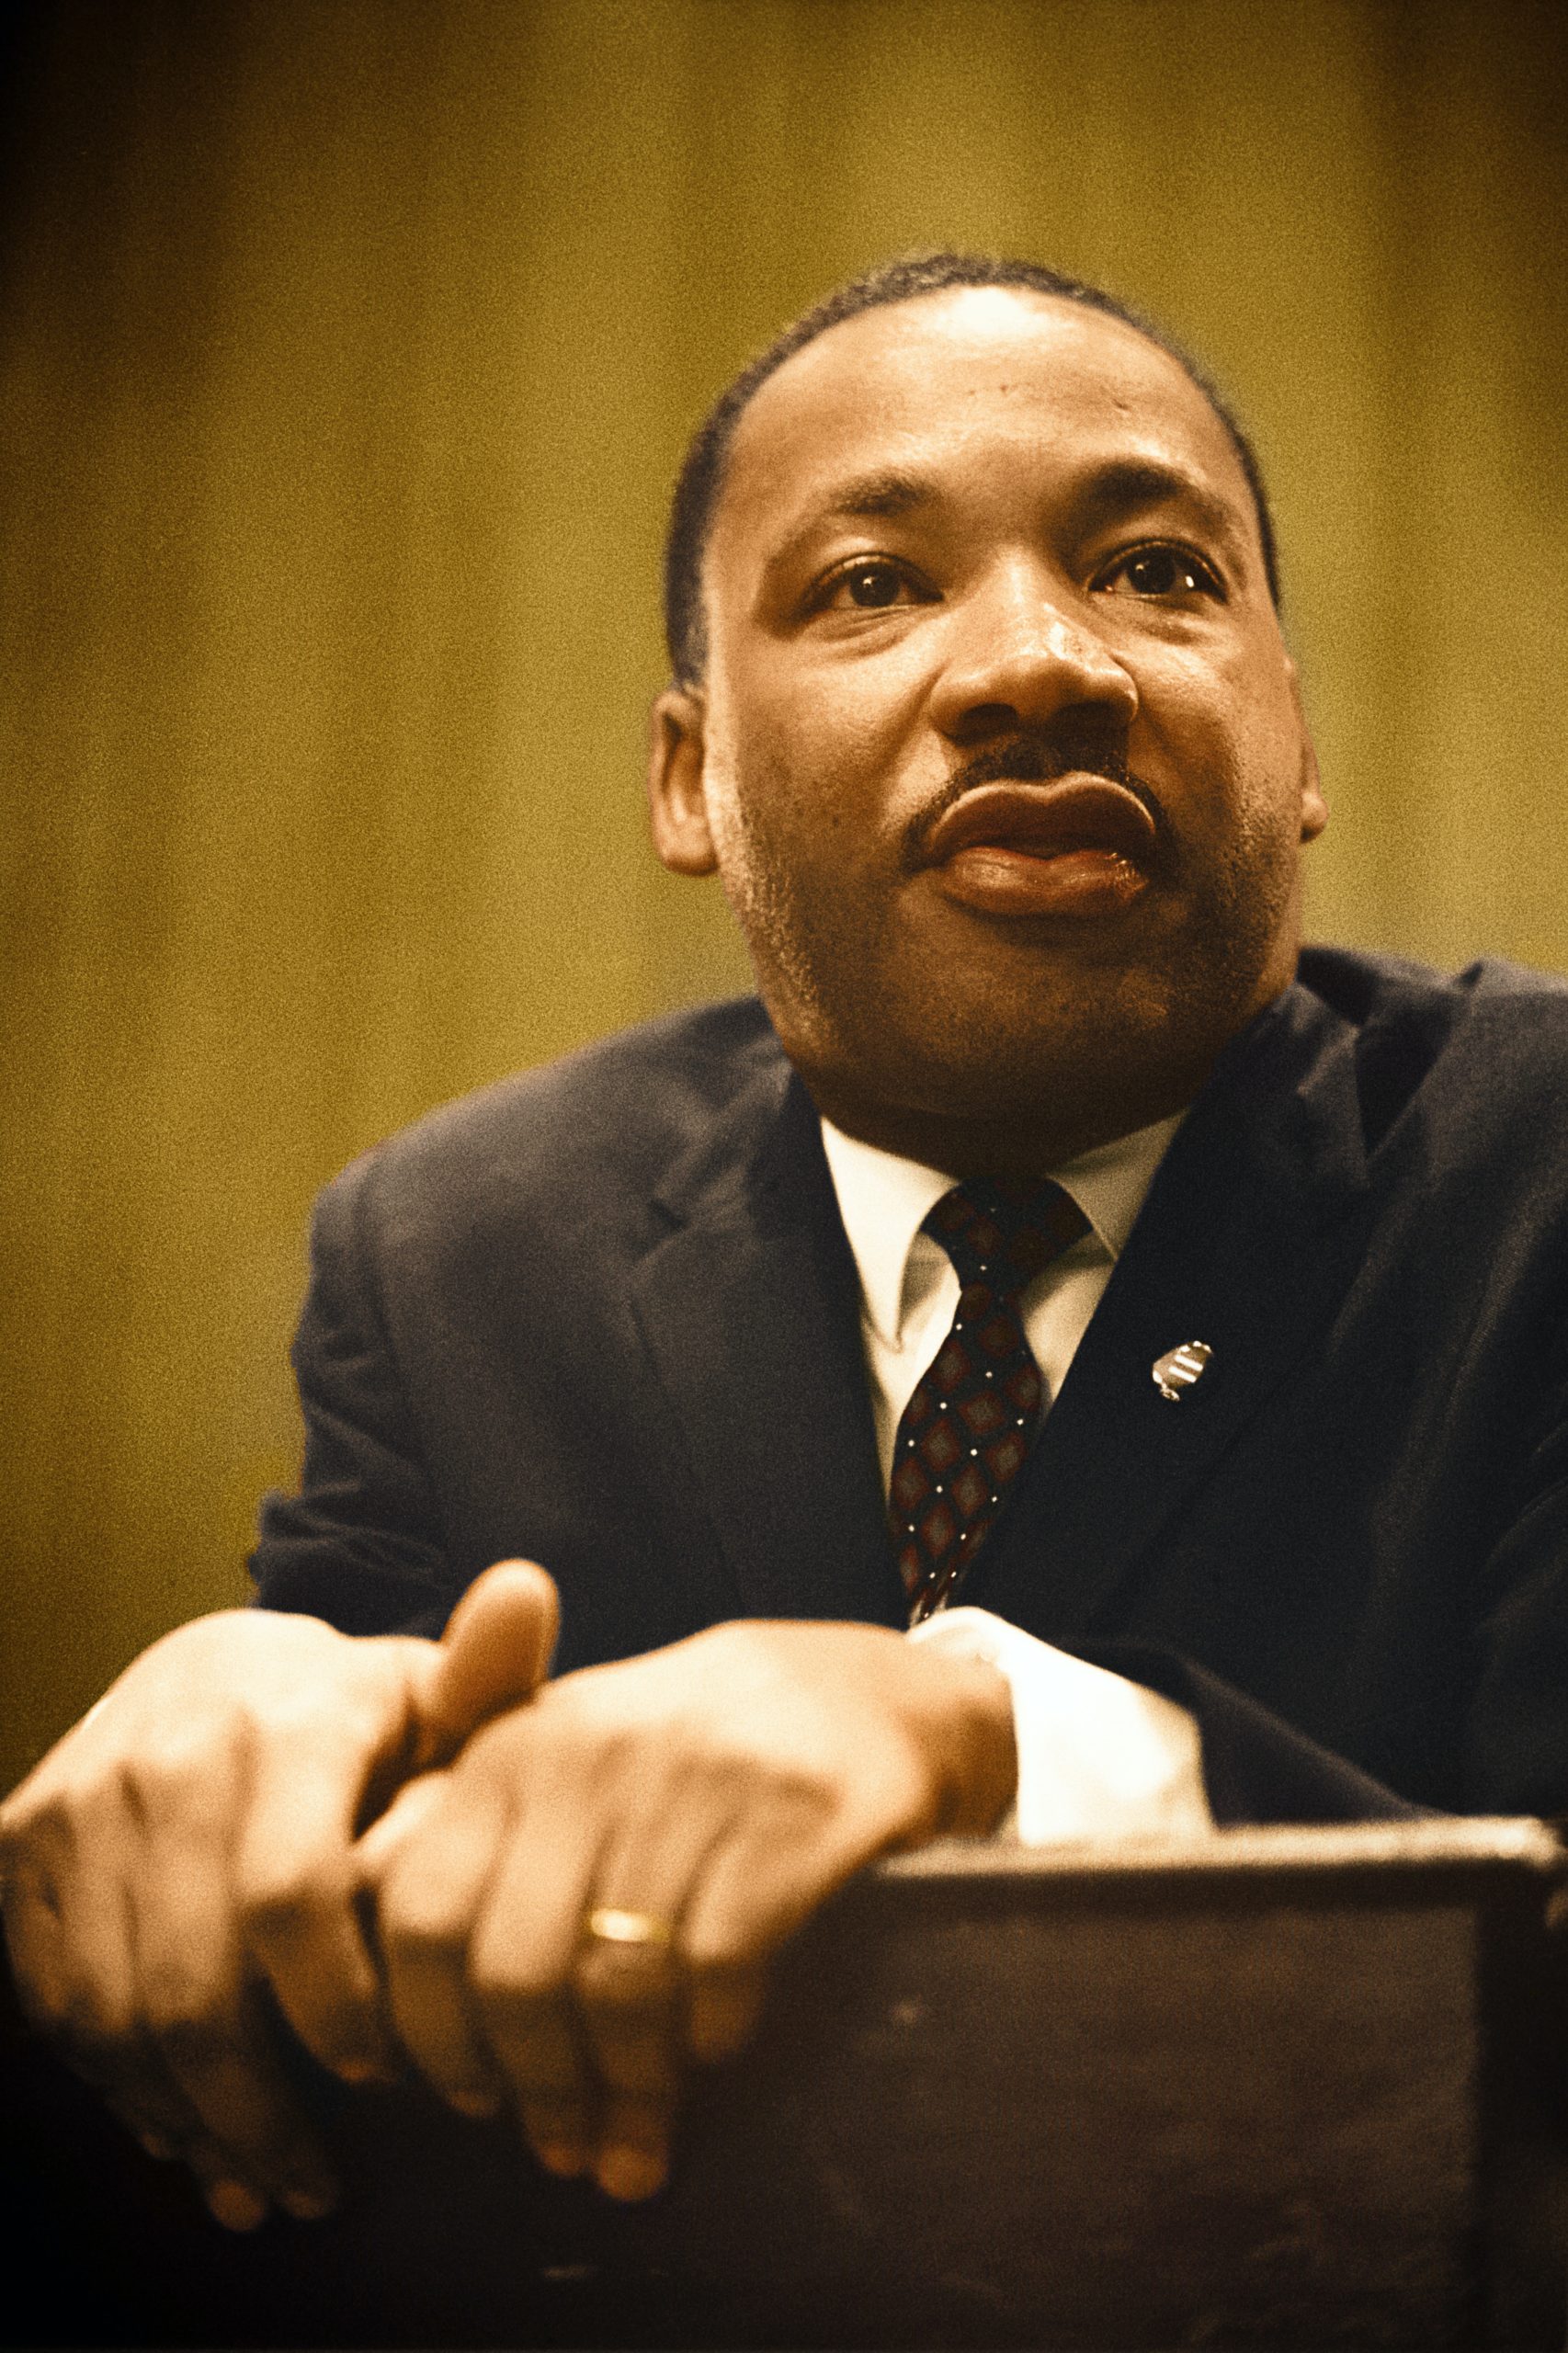 Martin Luther King Jr. Image courtesy of Unsplash.